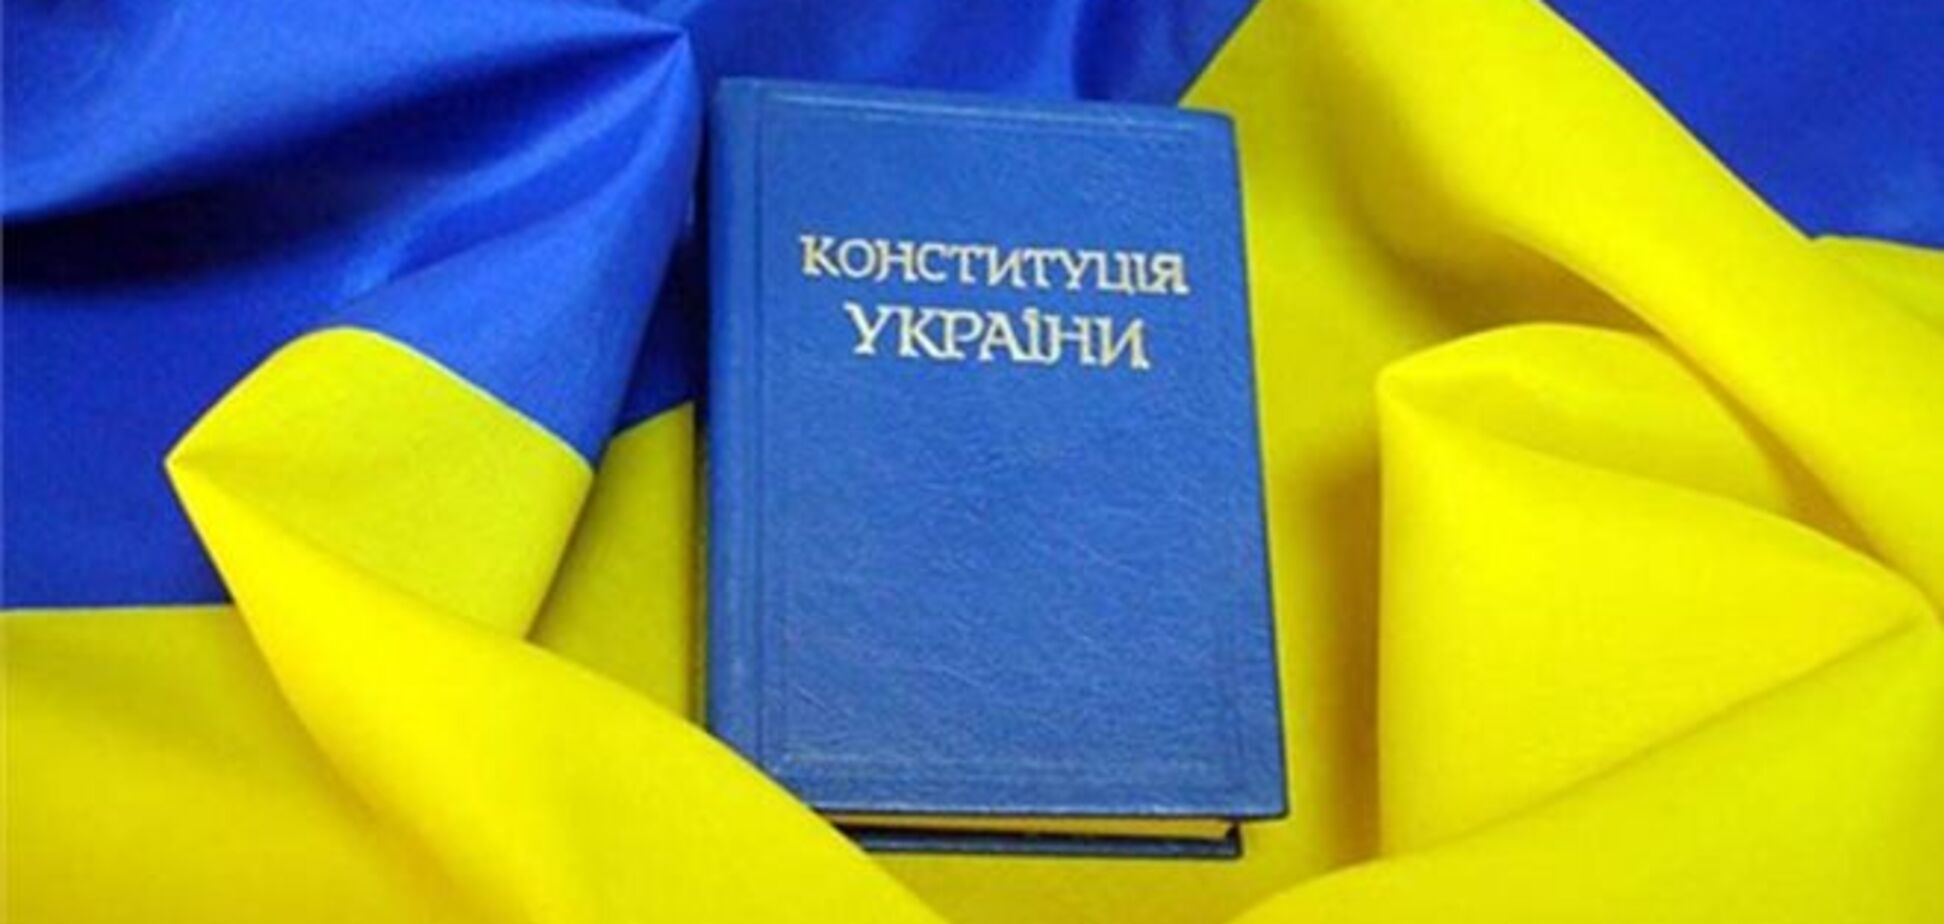 Общественные деятели обсудили Конституцию Украины на круглом столе